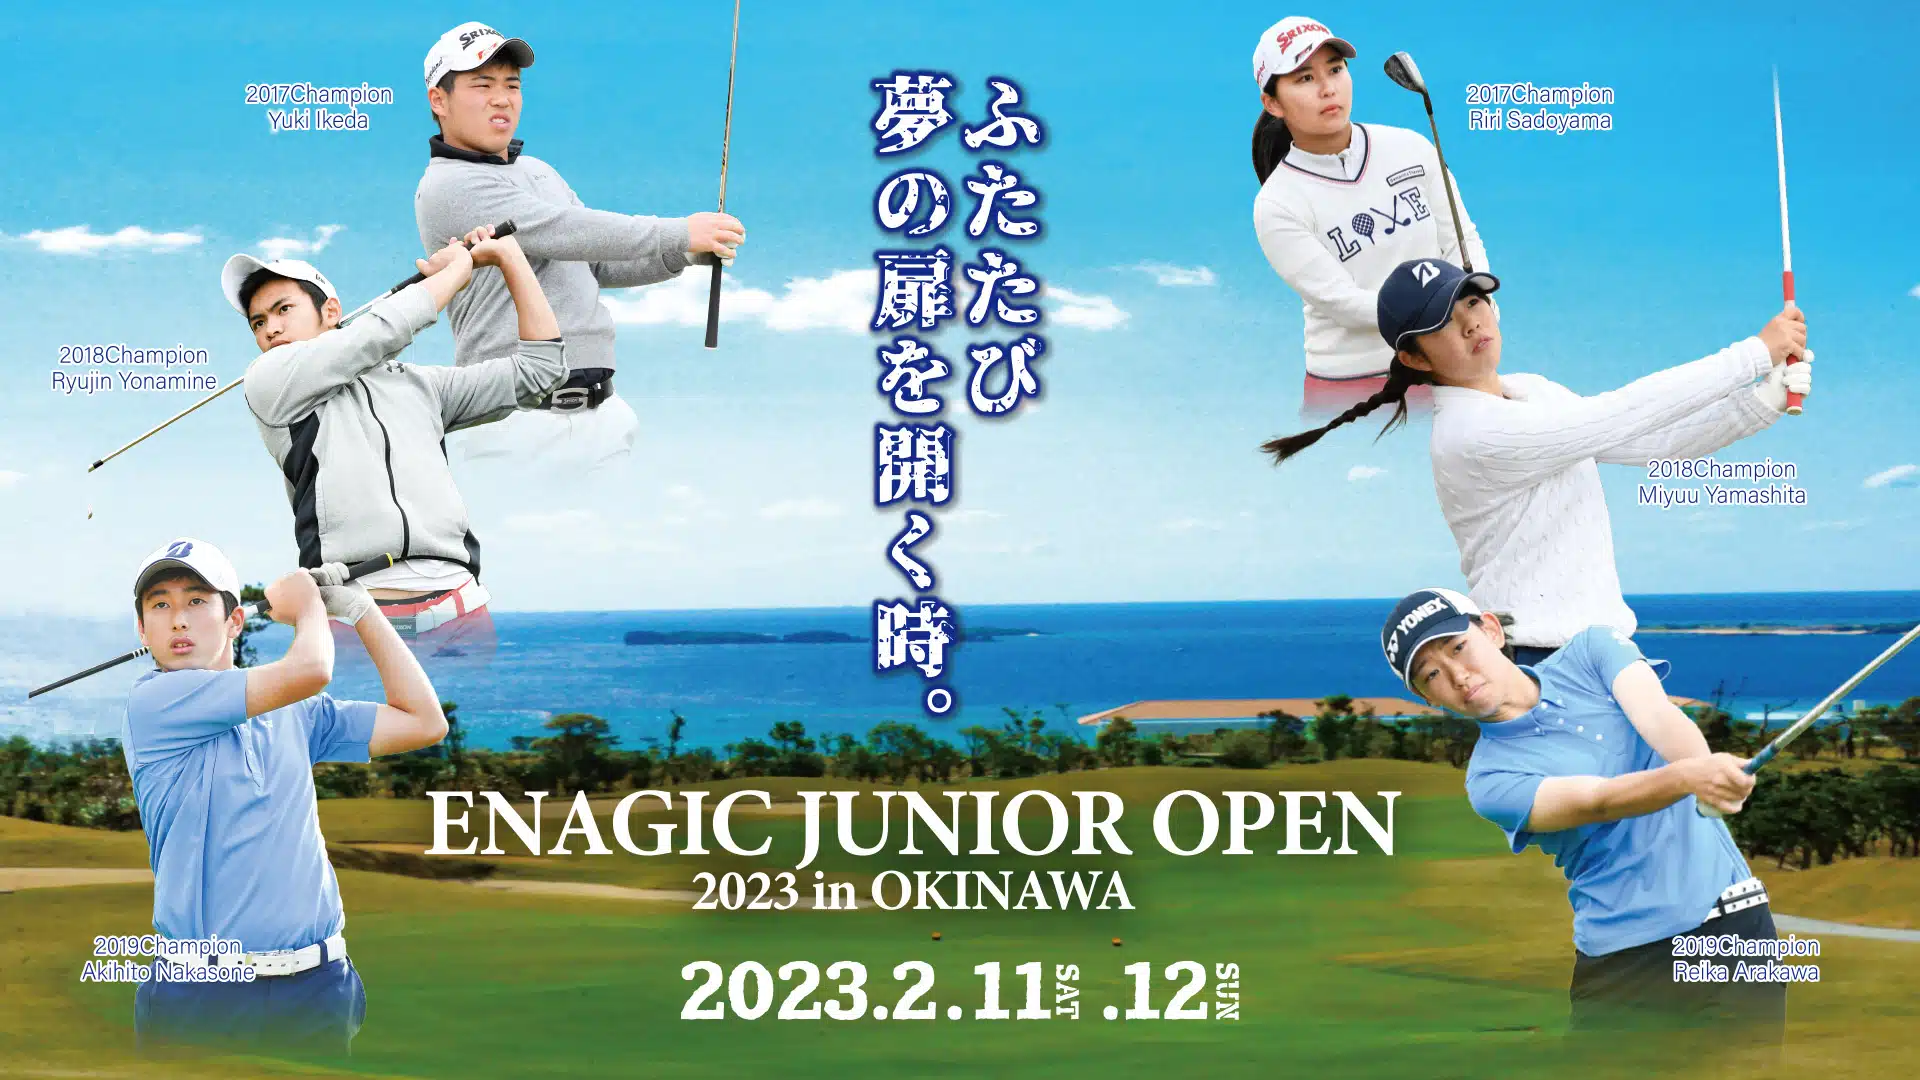 2023 Enagic Junior Open